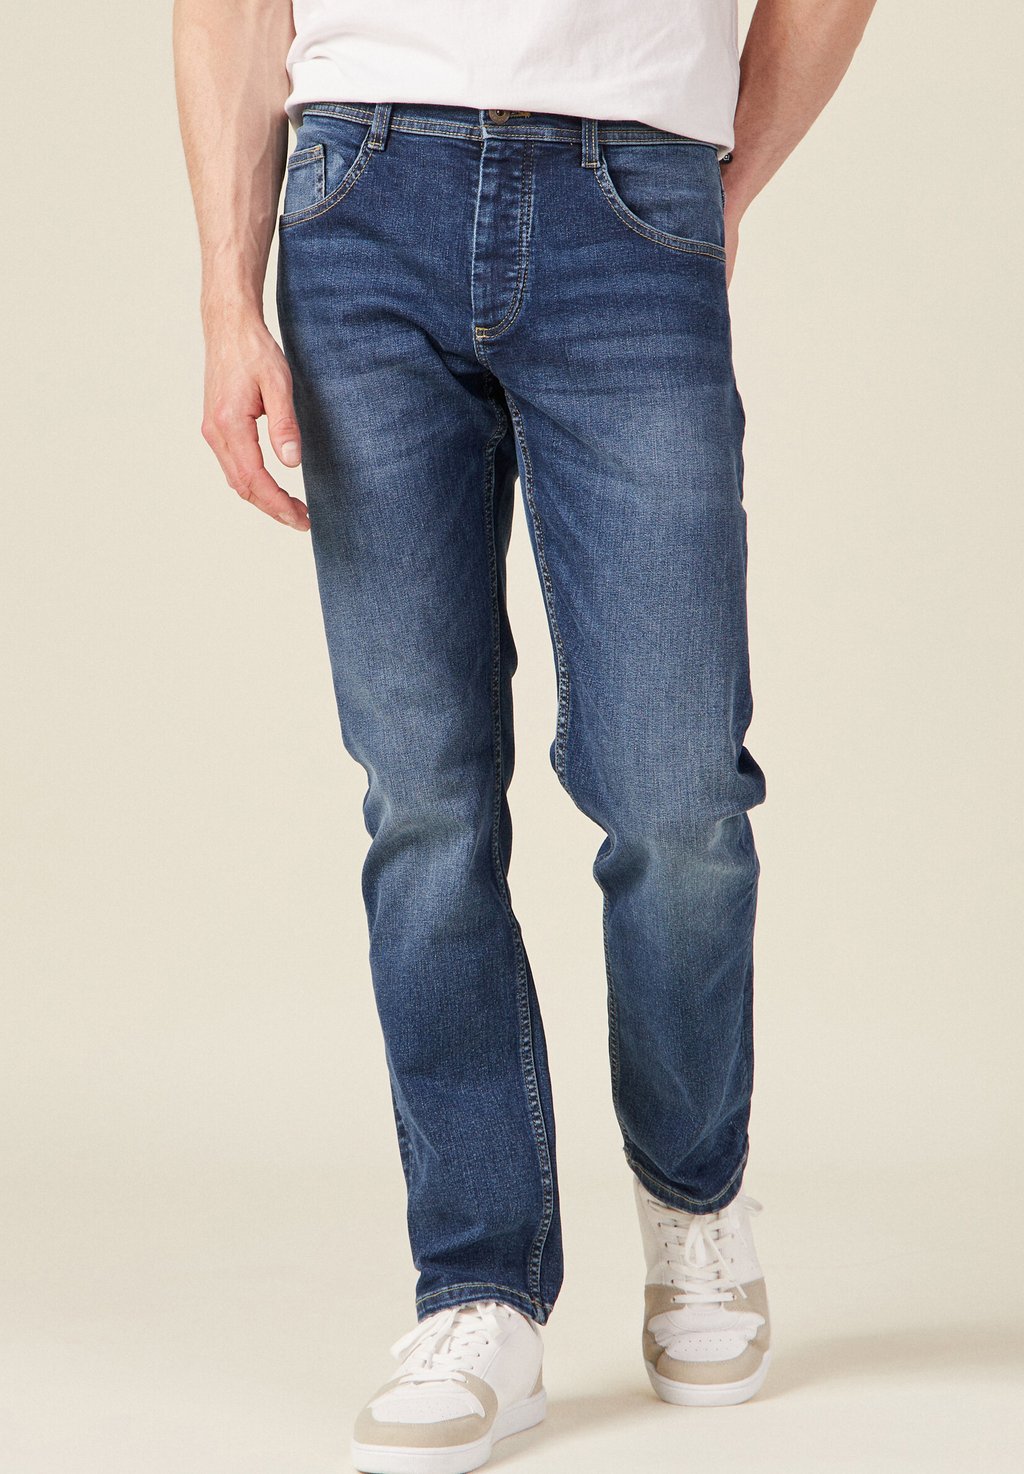 Джинсы-сигареты BONOBO Jeans, джинсовый камень